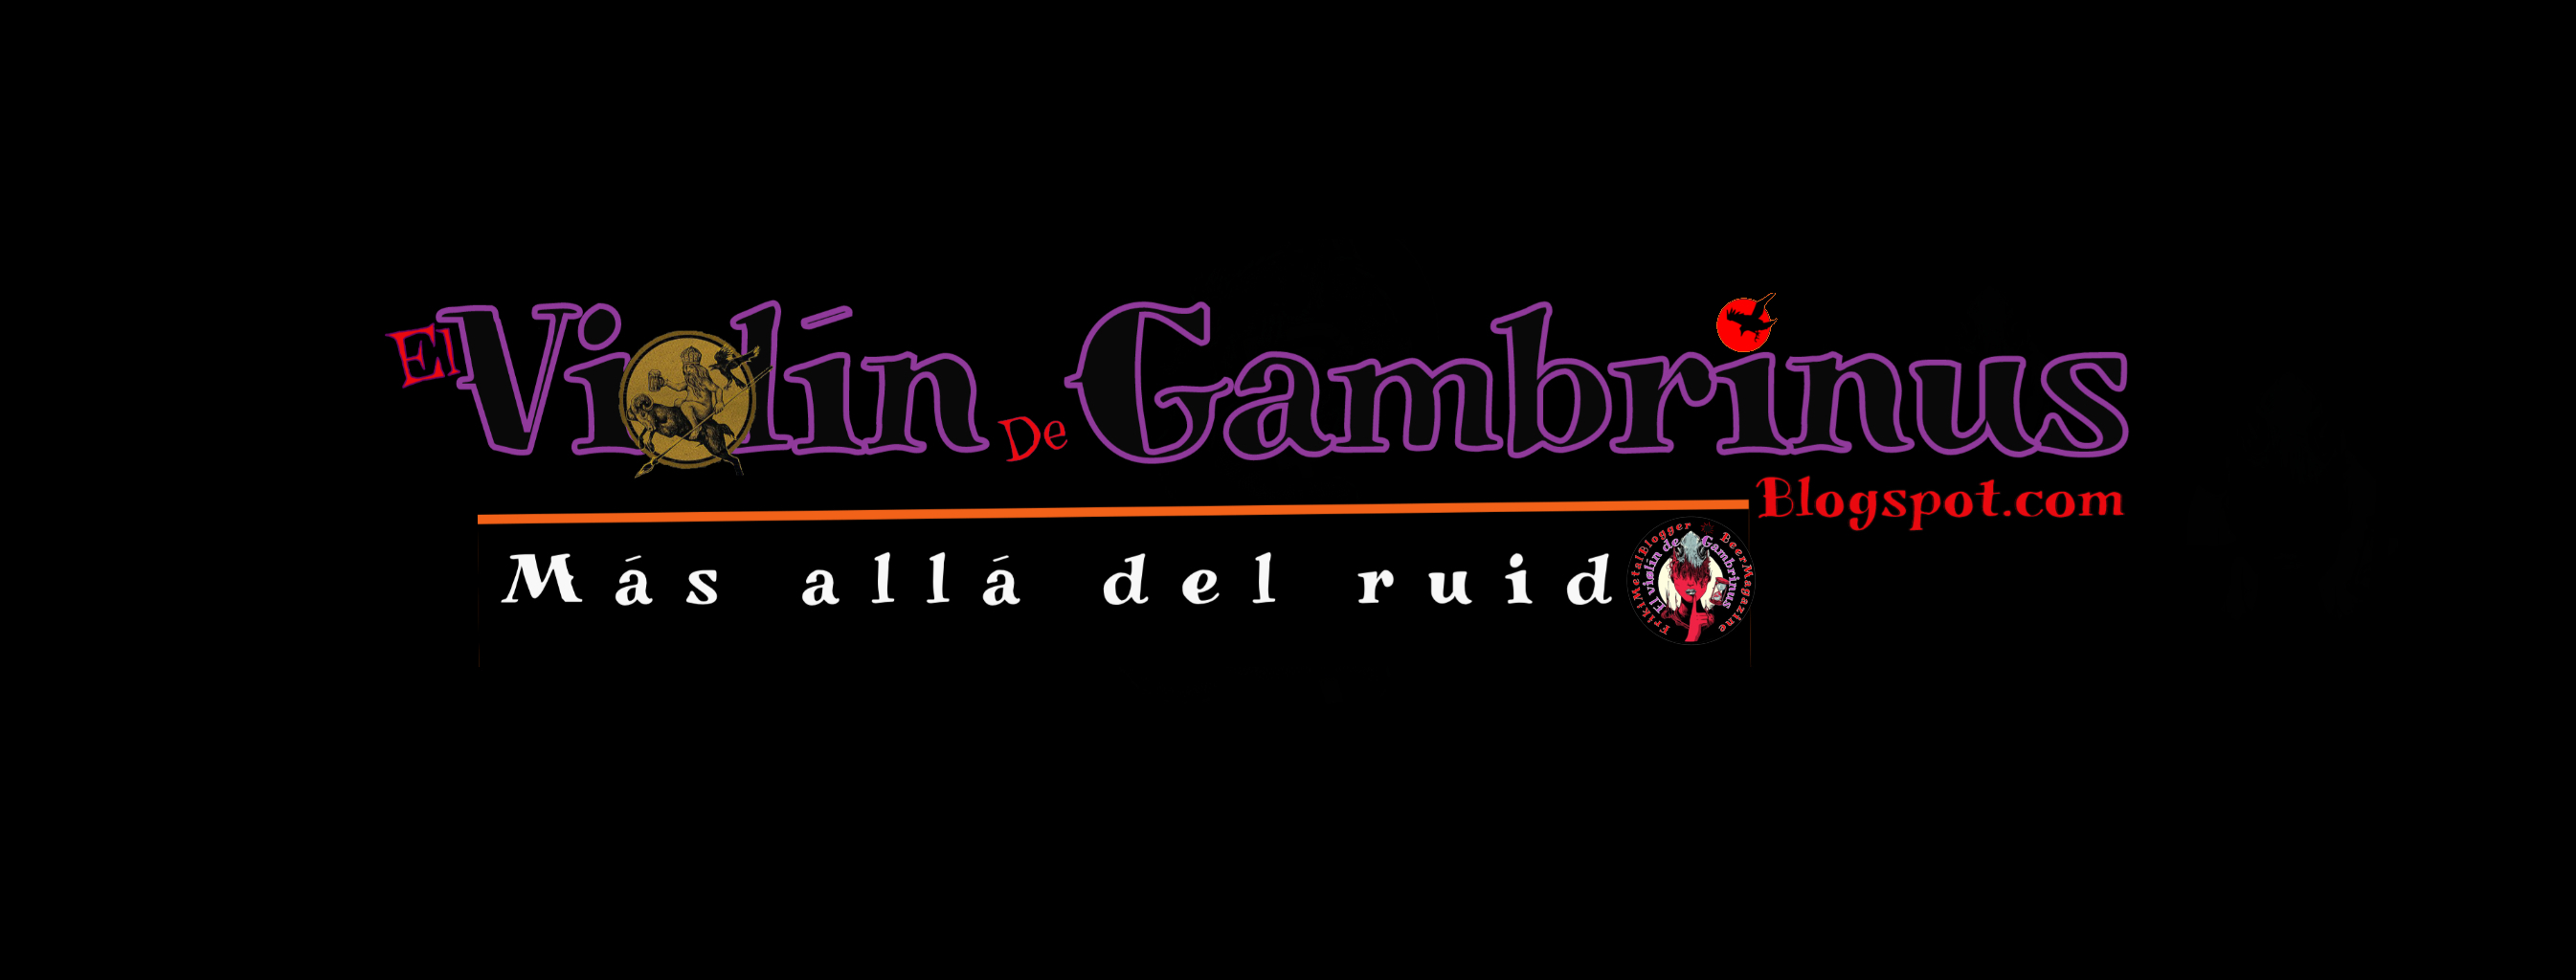 Buscador blog - Gambrinus  en Bitakoras